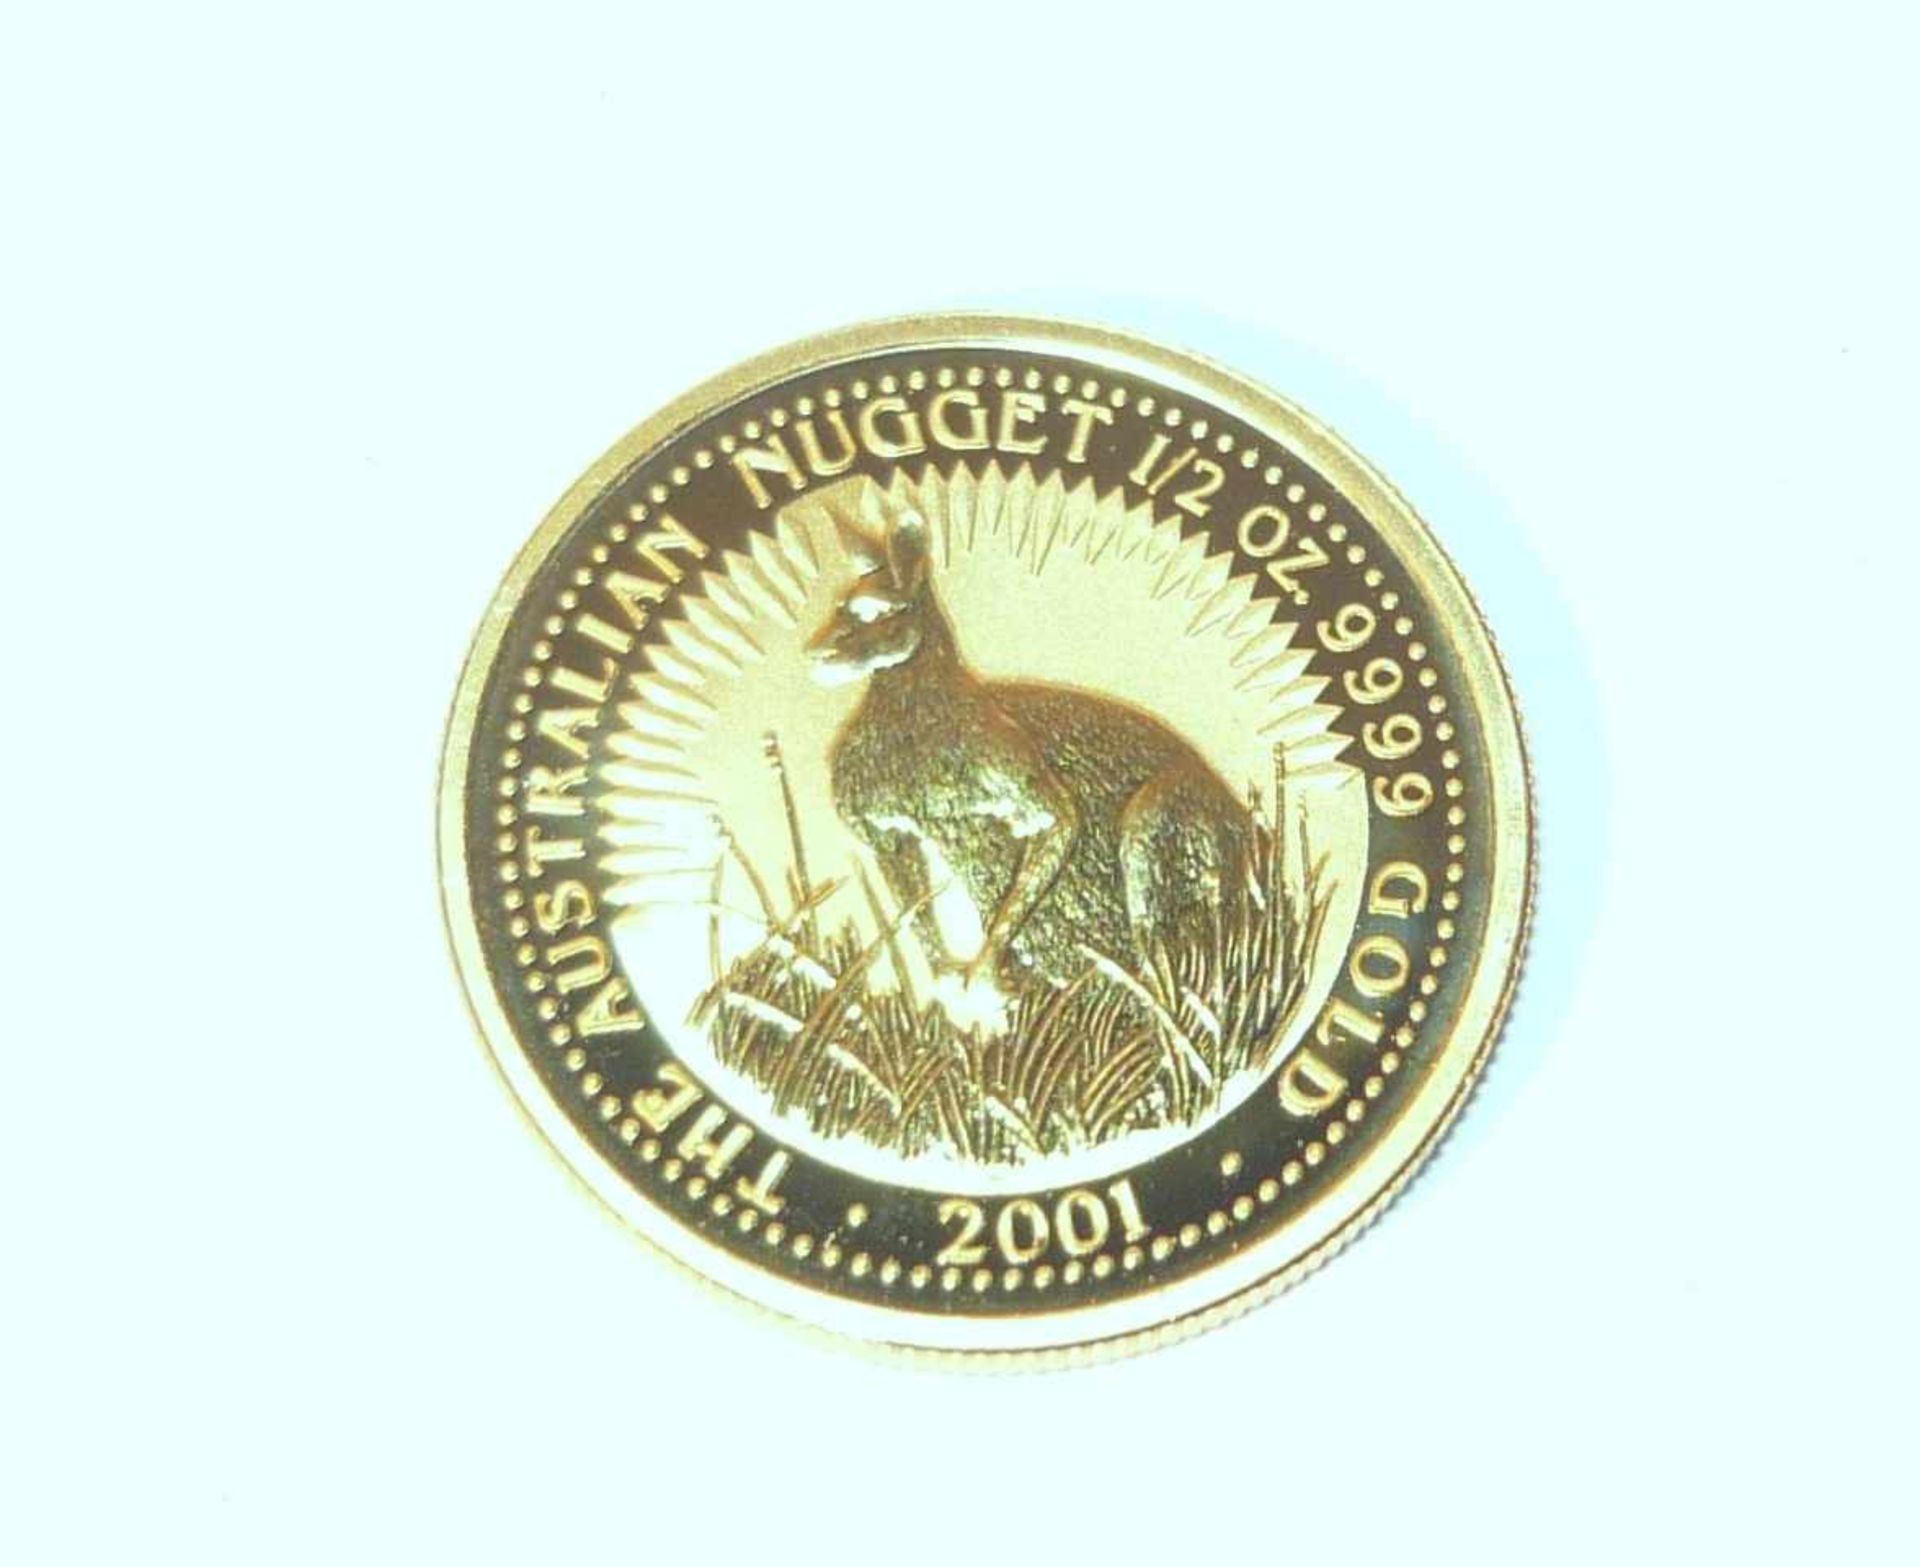 50 Australische Dollar in Gold. 2001, 1/2 OZ. DM ca. 24 mm.50 Australian Dollar in gold. 2001, 1/2